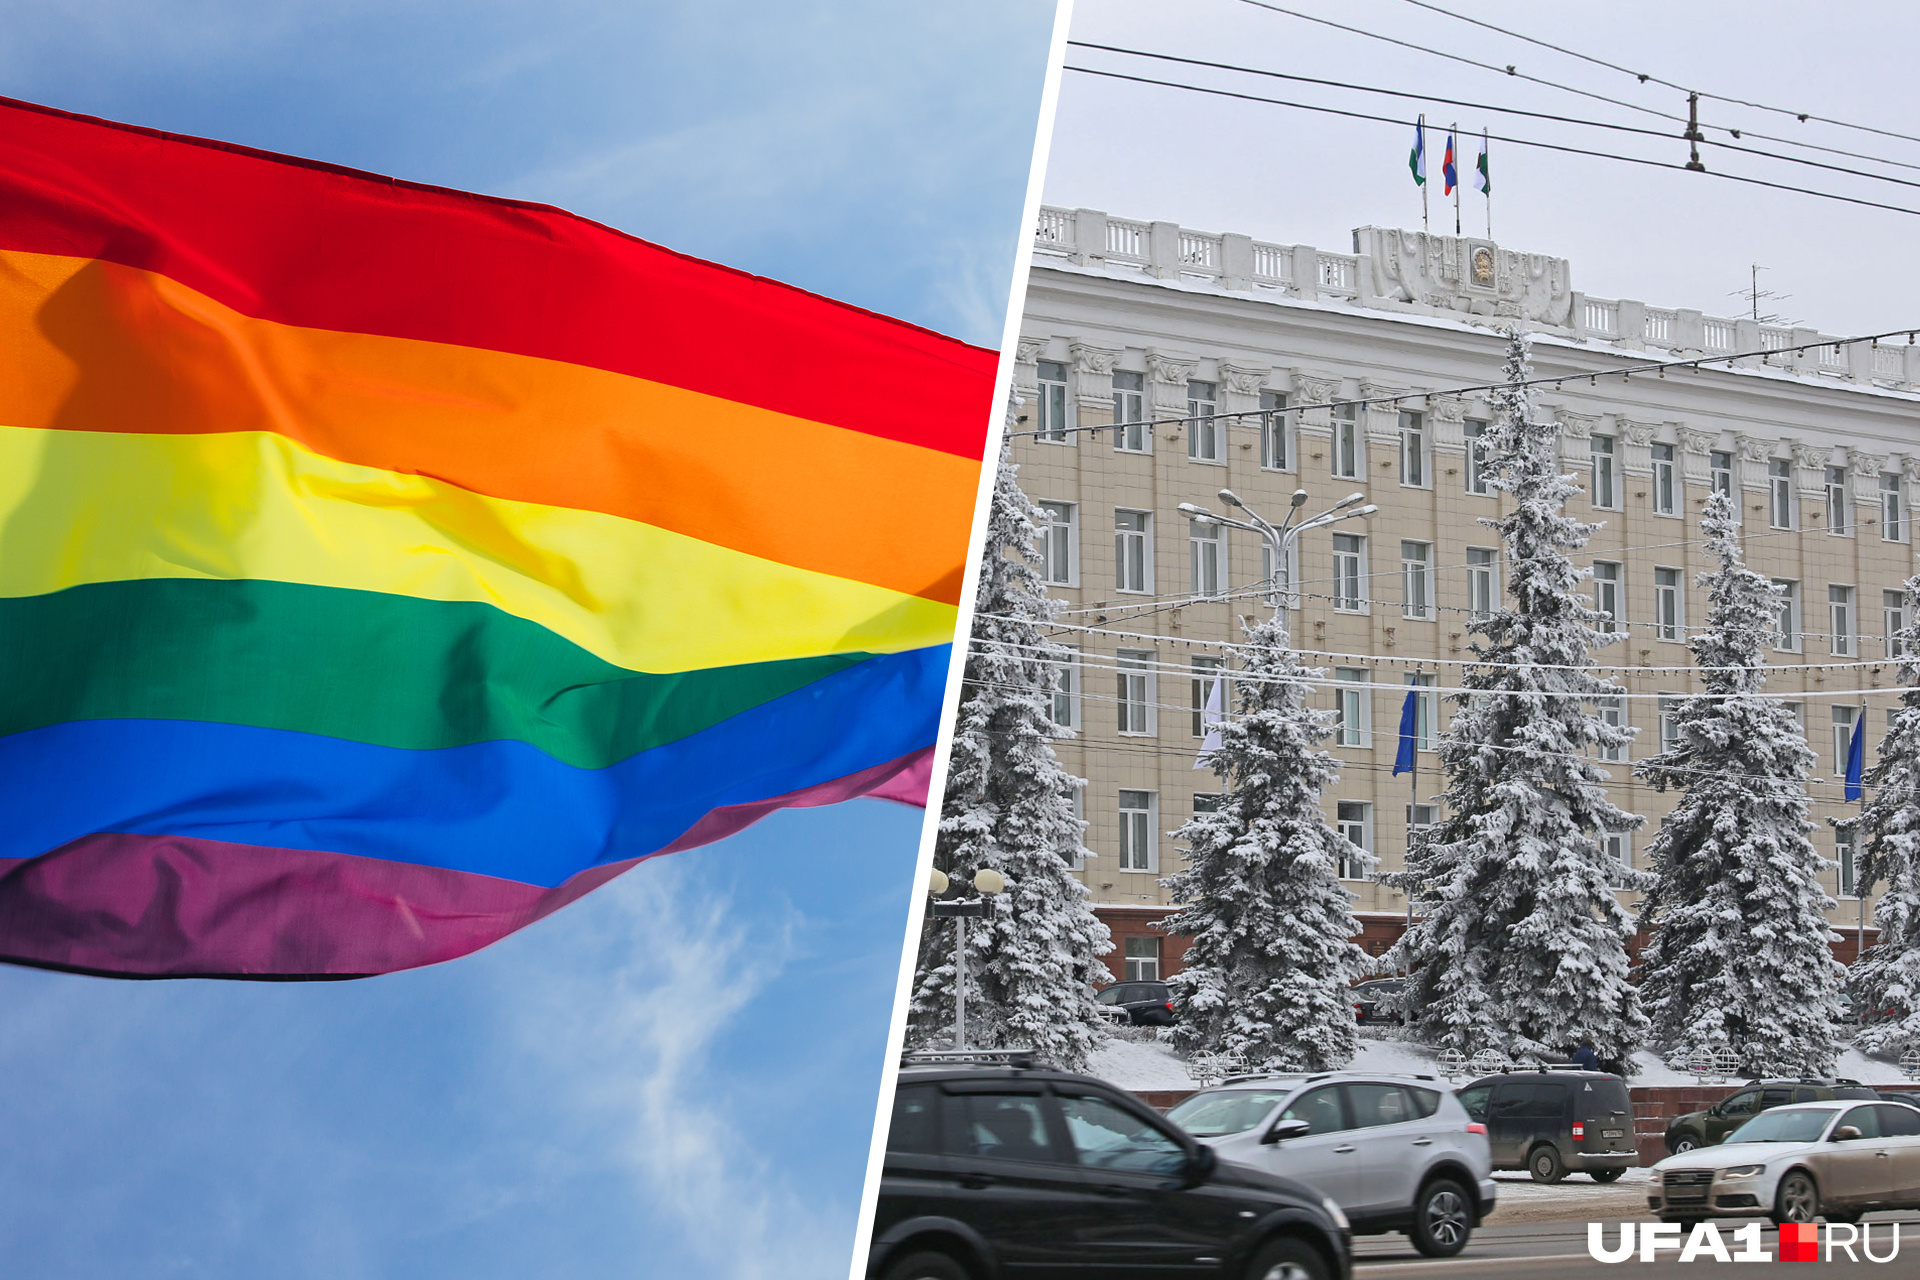 Митинг в поддержку ЛГБТ в Уфе, мэрия Уфы, ЛГБТ в Уфе, секс-меньшинства - 15 марта 2022 - ufa1.ru